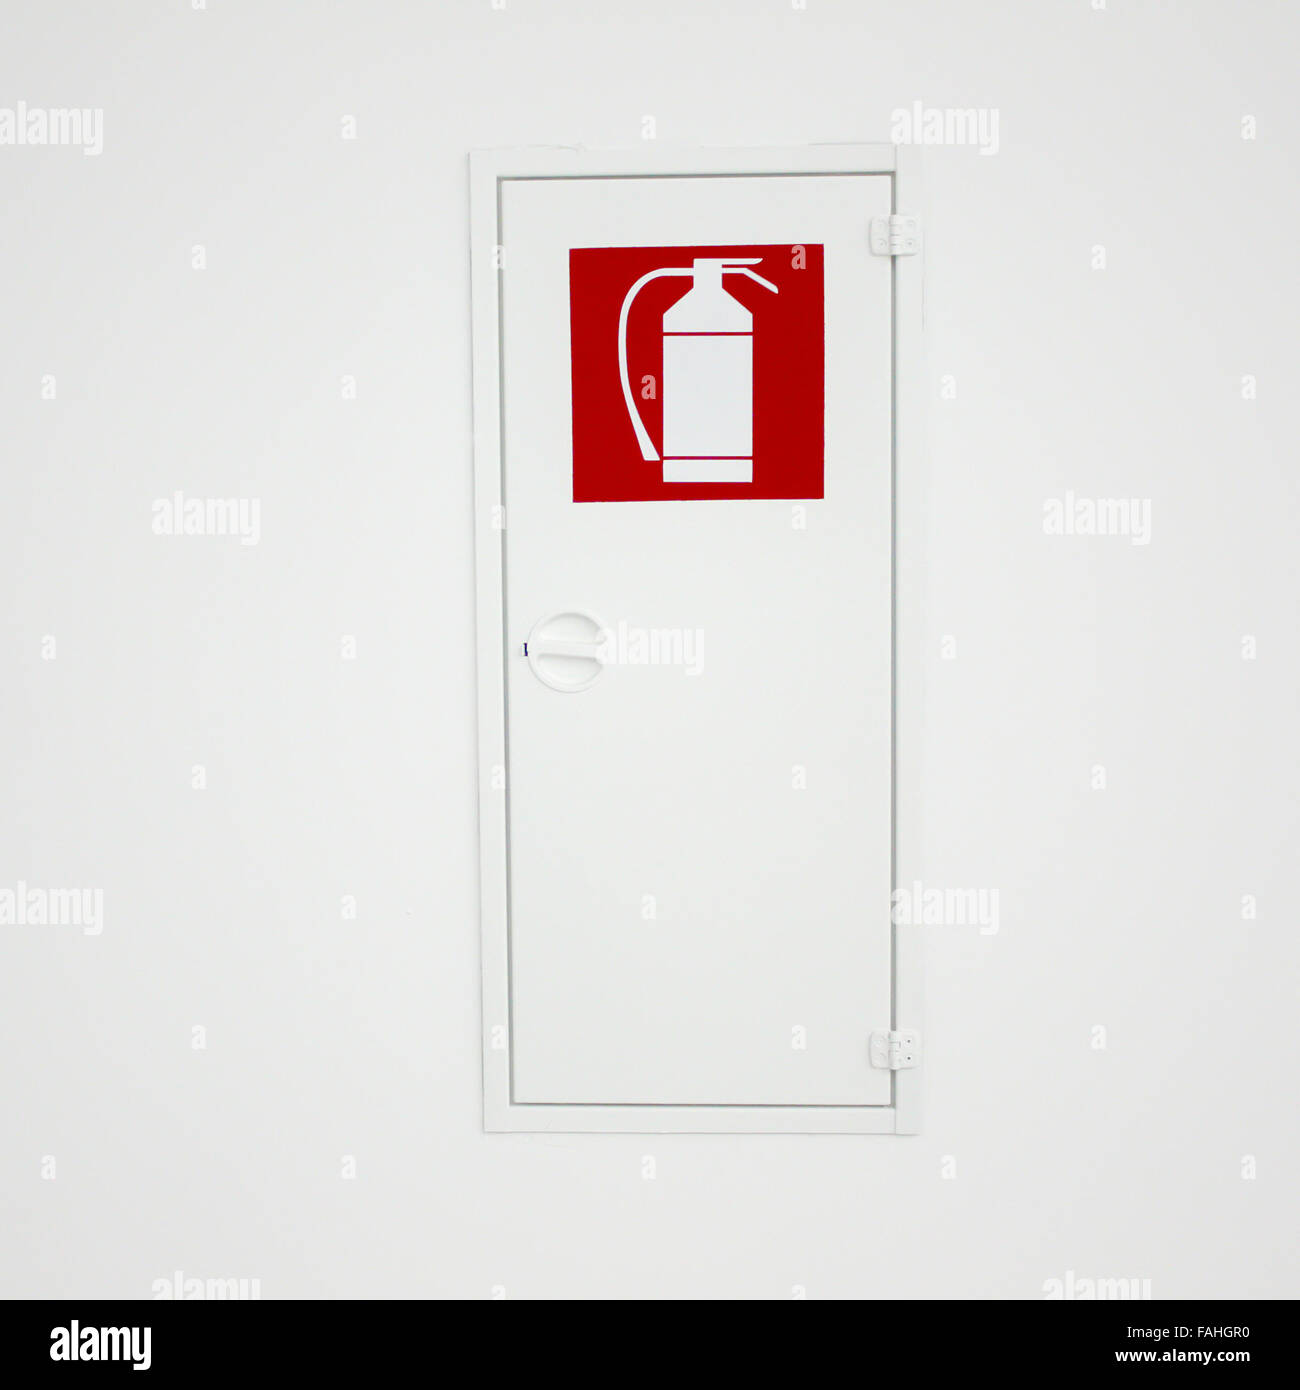 Feuerlöscher Schild eine Box an der Wand Stockfotografie - Alamy